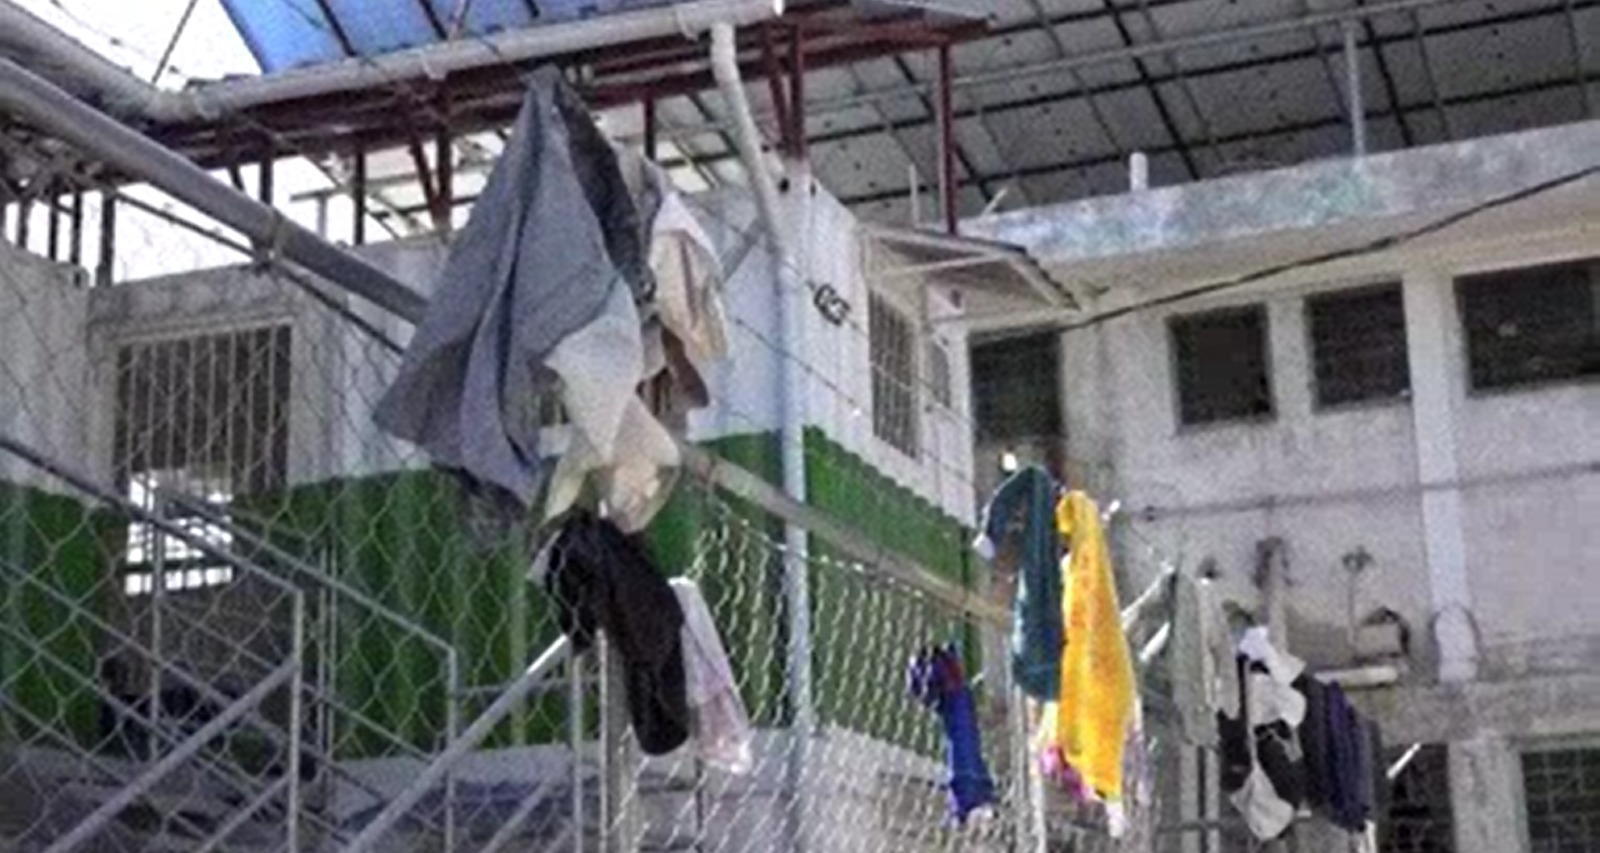 海地帮派作乱袭监狱  数千囚犯逃狱至少12死